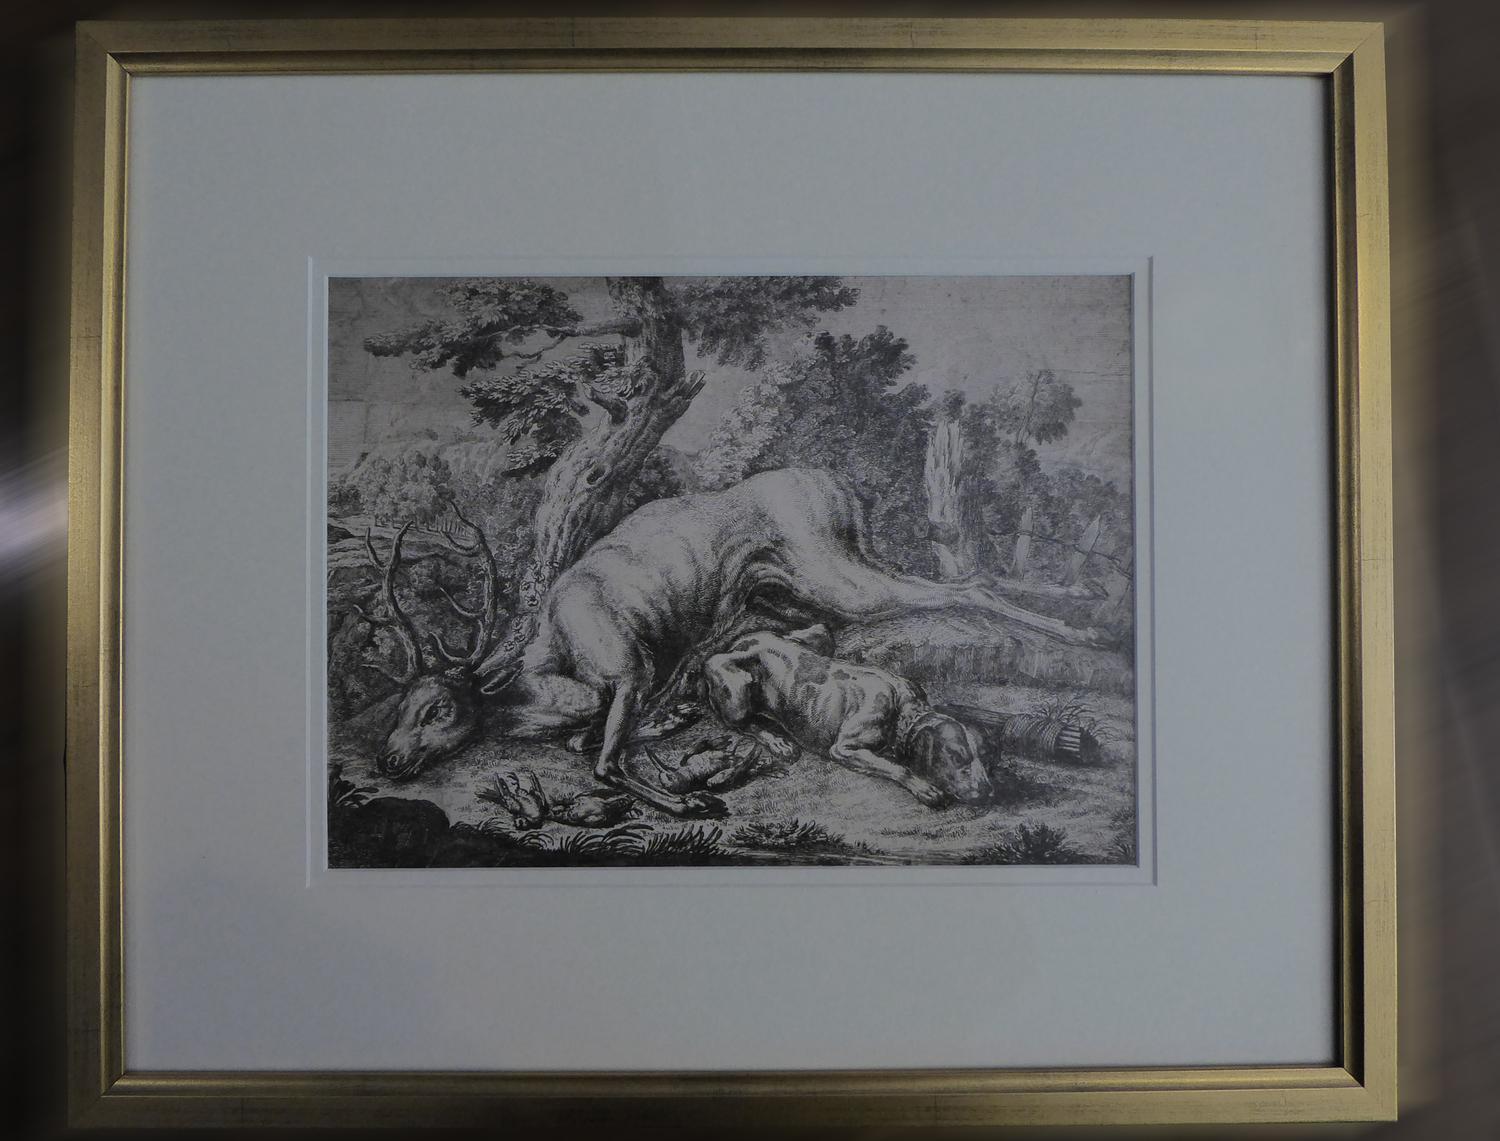 Schöner Kupferstich aus dem 18. Jahrhundert, der einen Hirsch nach der Jagd mit einem prächtigen, ruhenden Hund in einer ländlichen Szene zeigt.